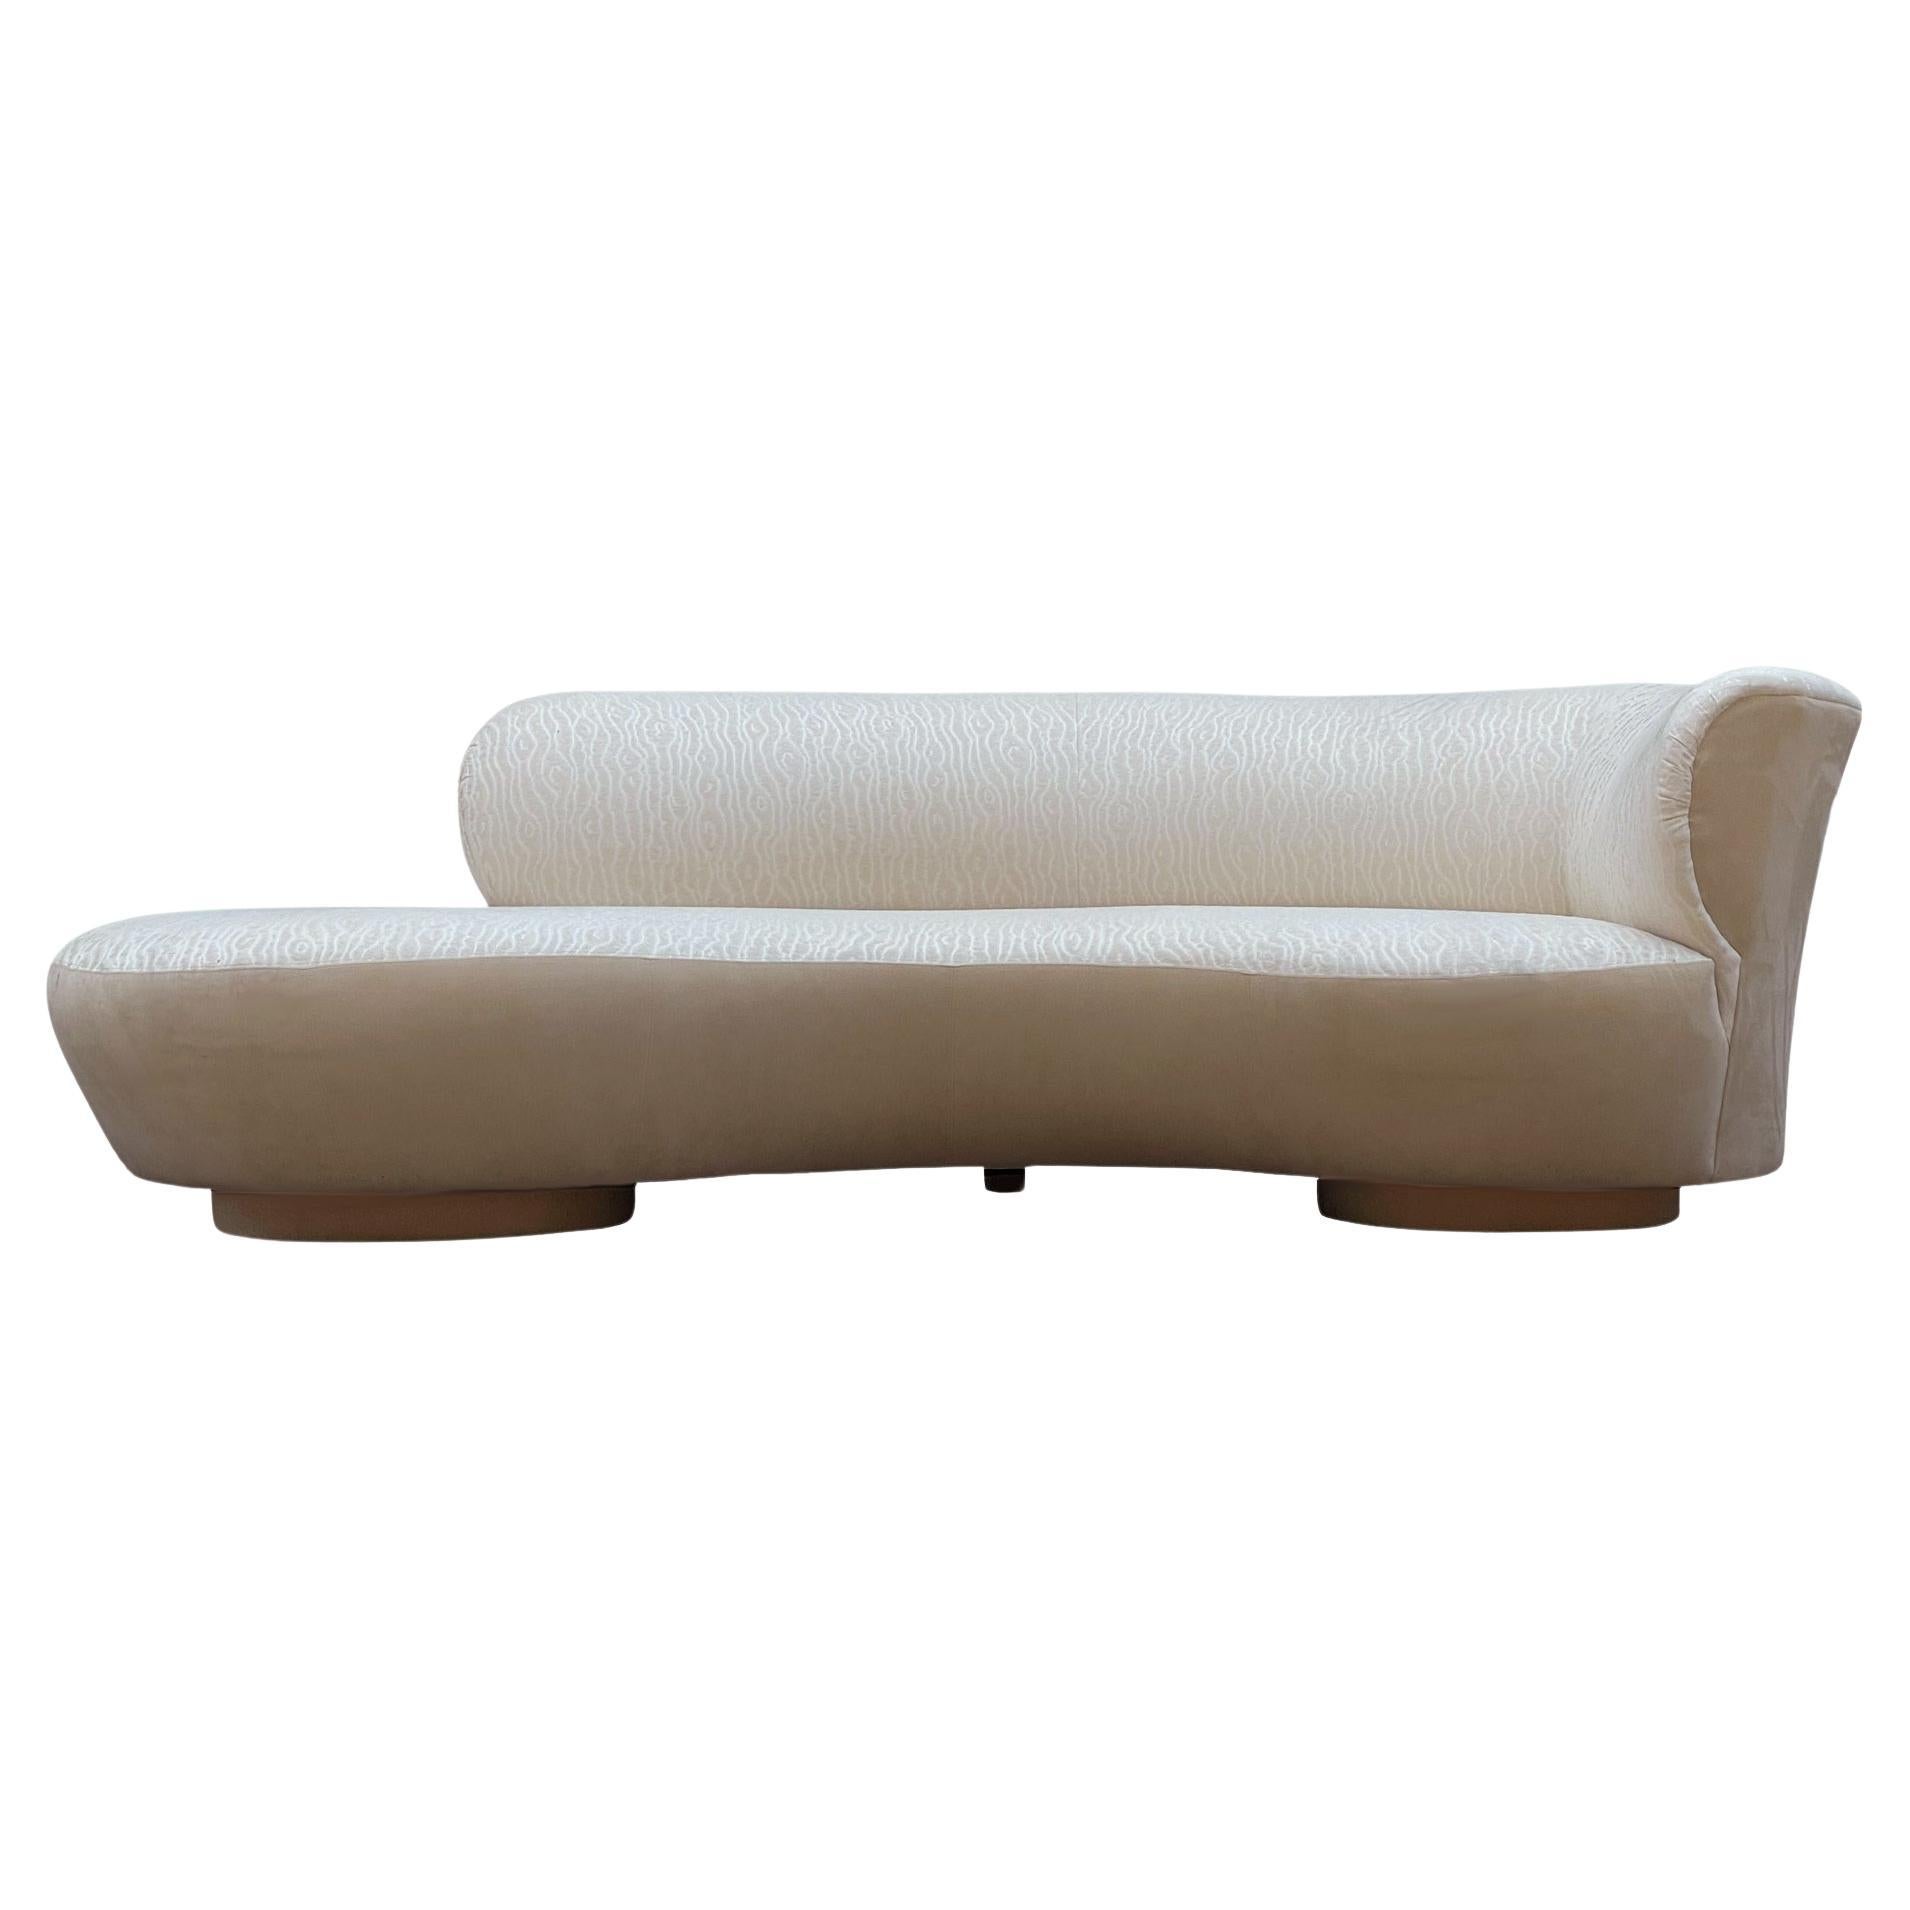 Canapé ou chaise longue en forme de nuage Serpentine sculpturale et incurvée The Moderns